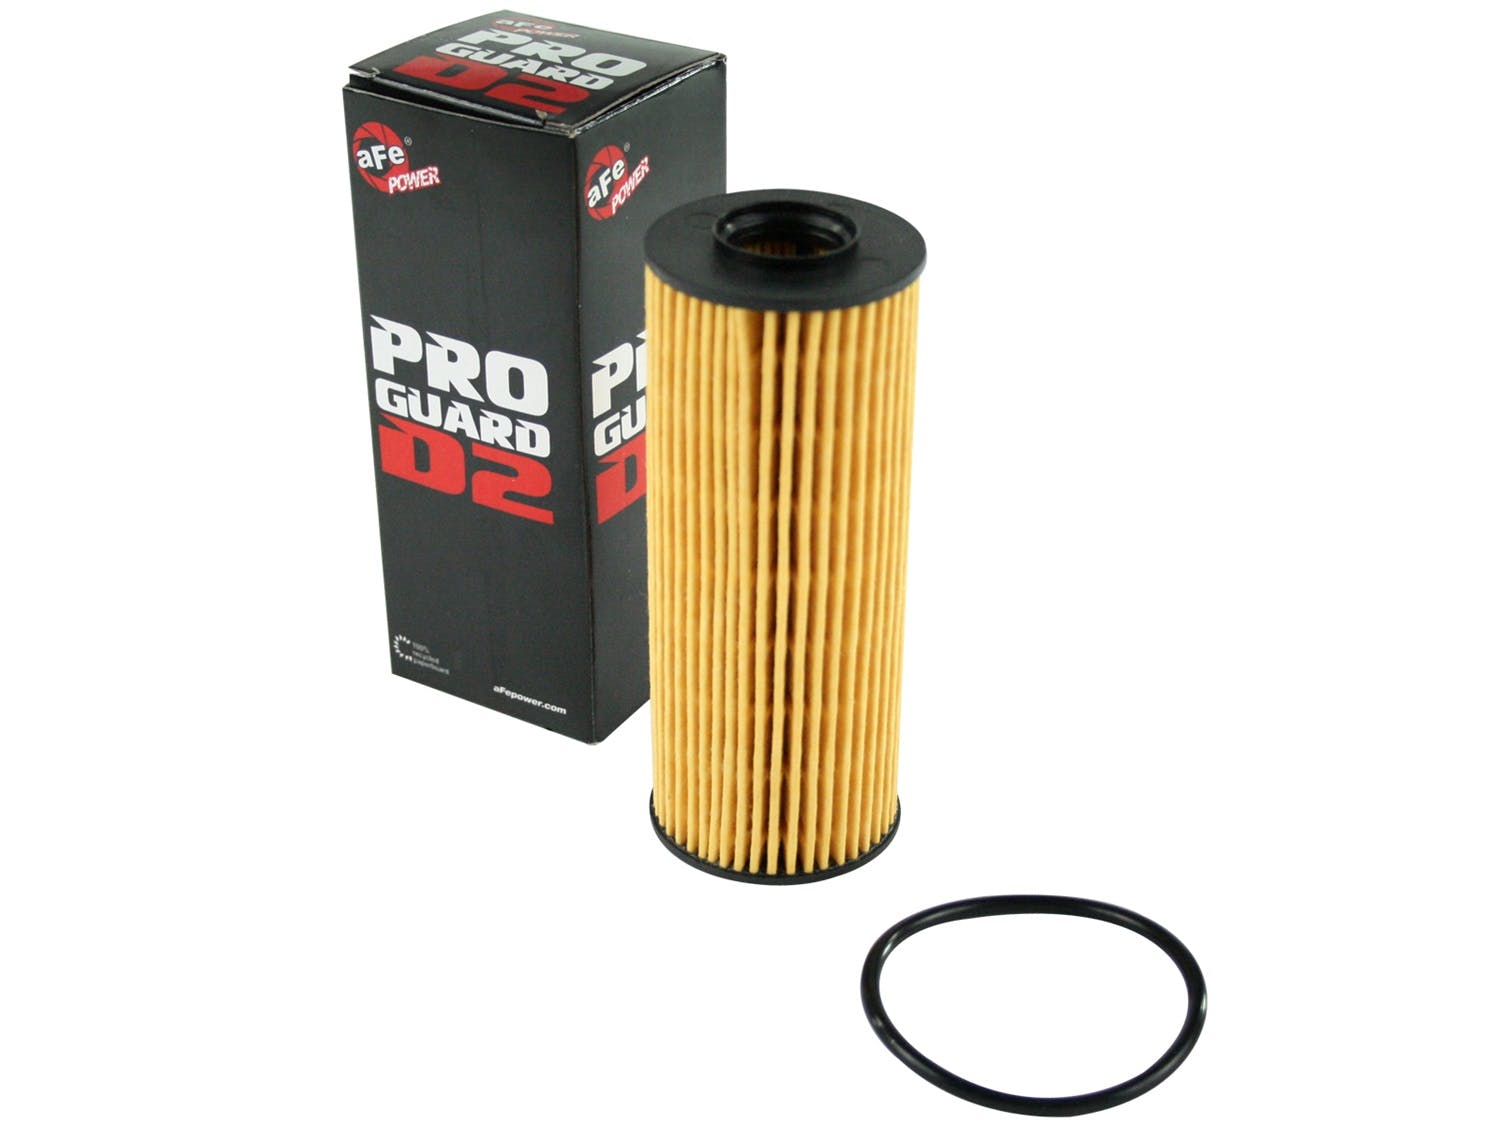 AFE 44-LF026 Pro-GUARD D2 Oil Filter